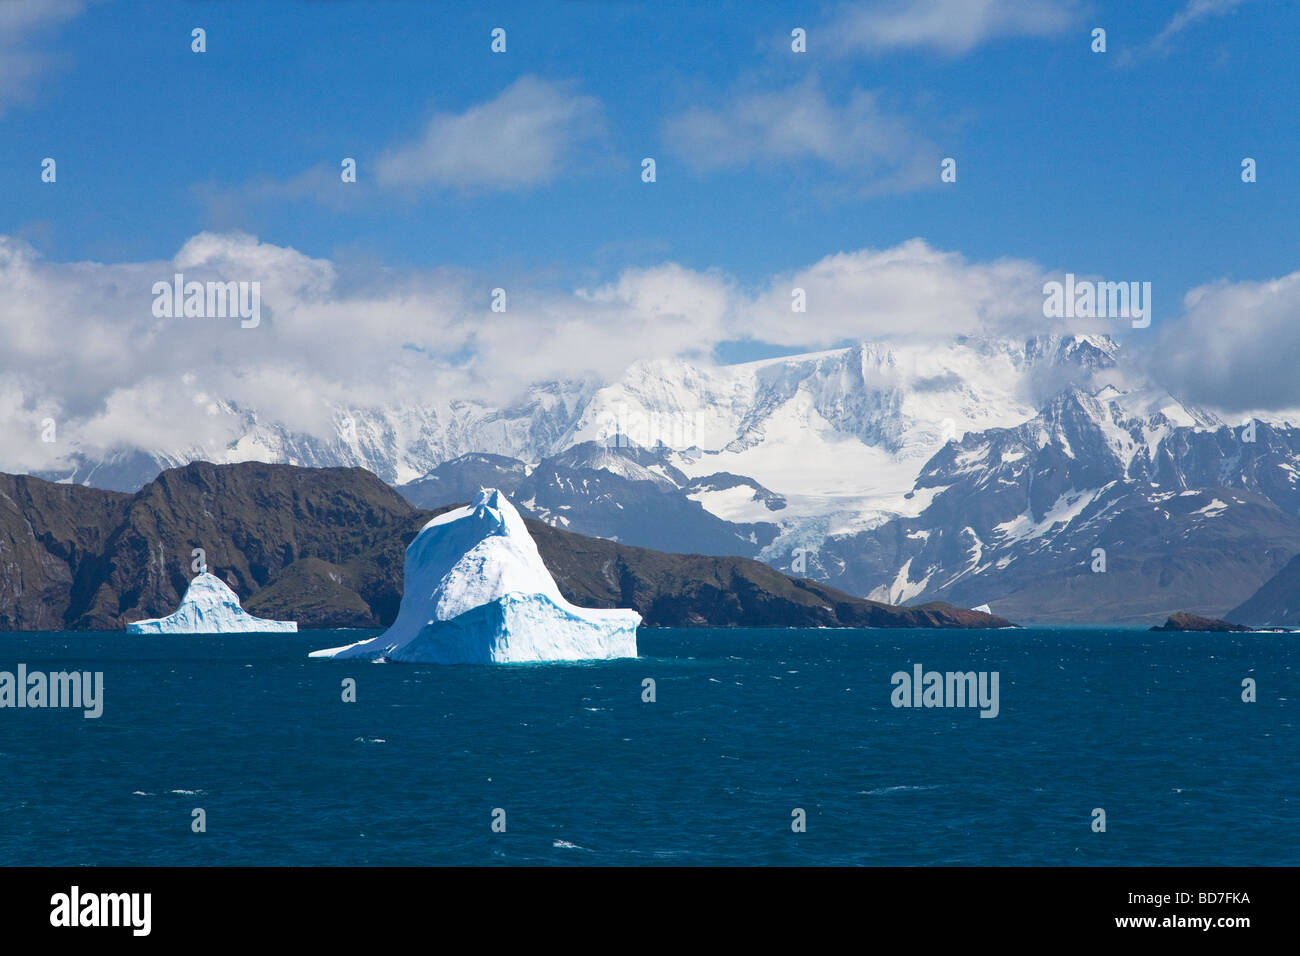 Les icebergs et les glaciers des montagnes près de Grytviken Géorgie du Sud Antarctique Banque D'Images